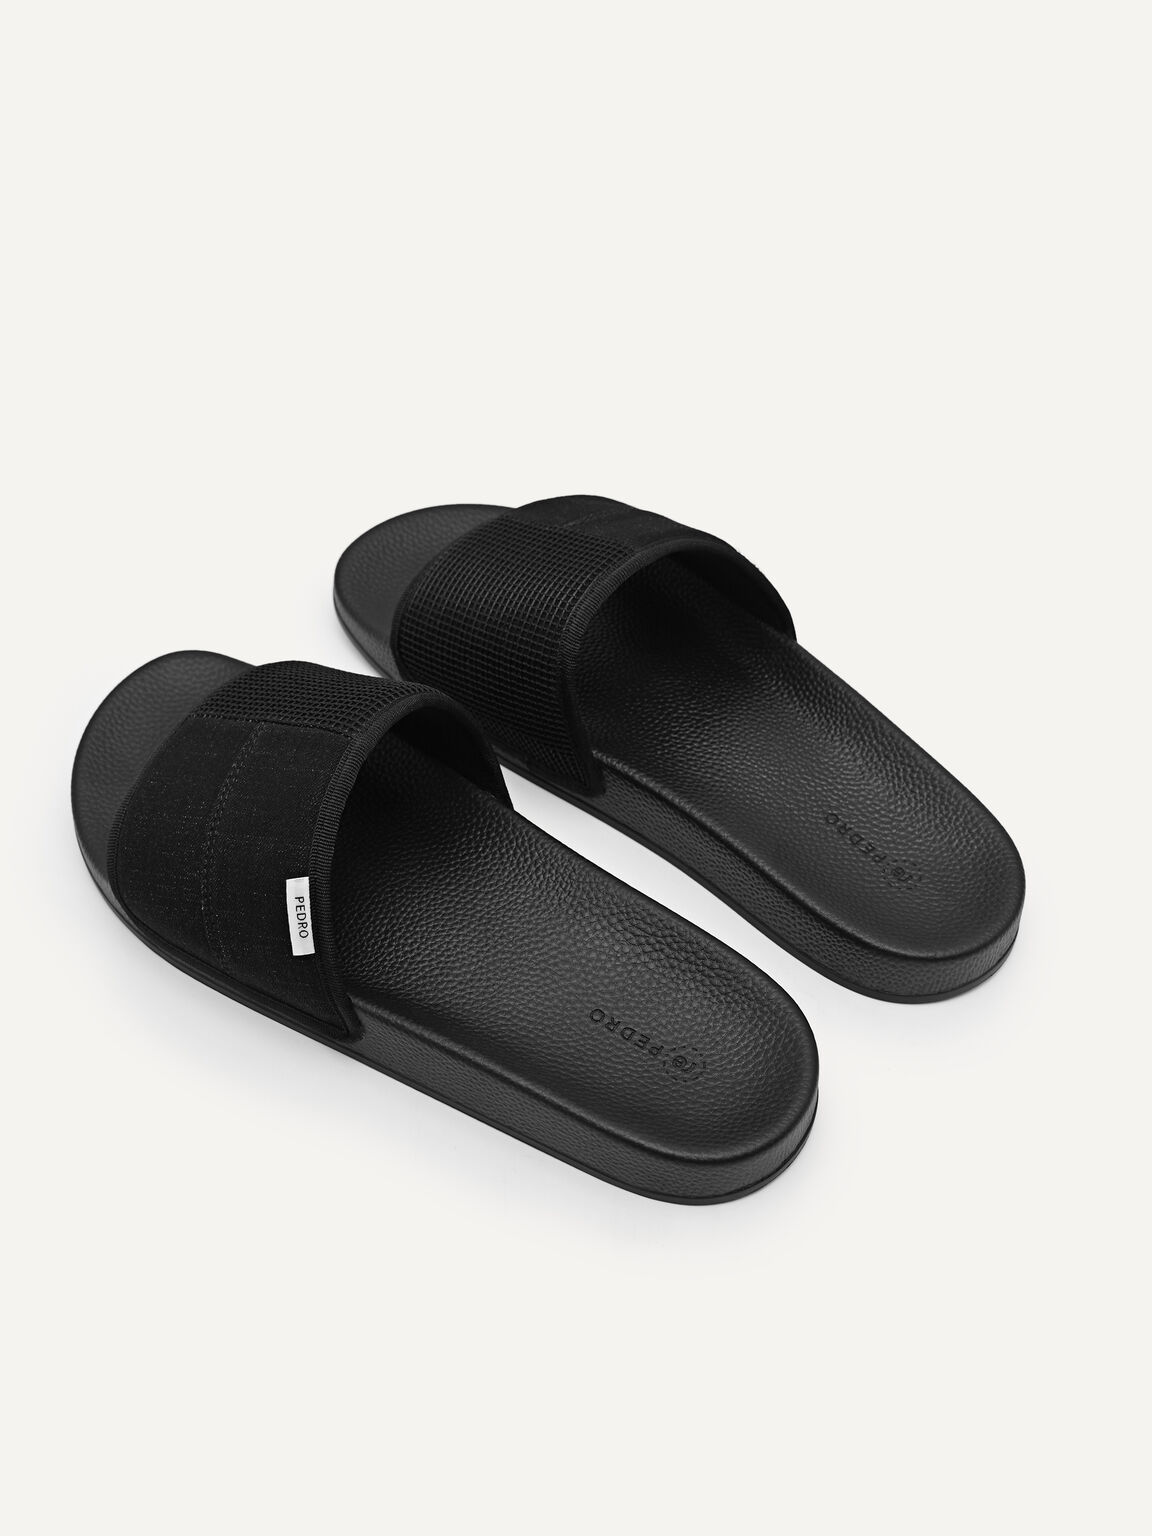 Denim Slide Sandals, Black